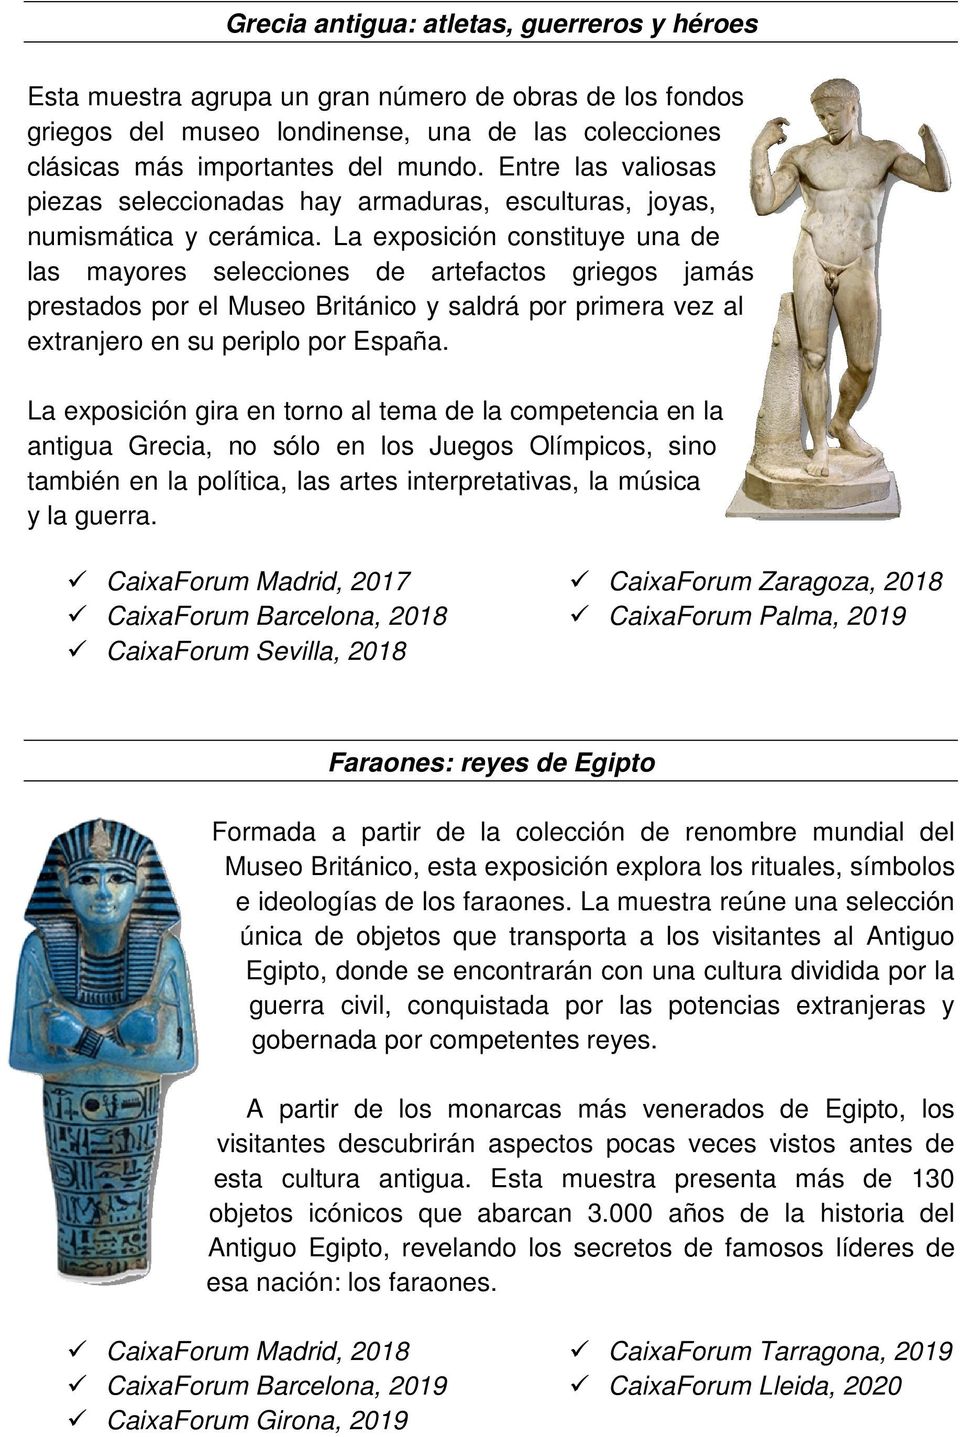 La exposición constituye una de las mayores selecciones de artefactos griegos jamás prestados por el Museo Británico y saldrá por primera vez al extranjero en su periplo por España.